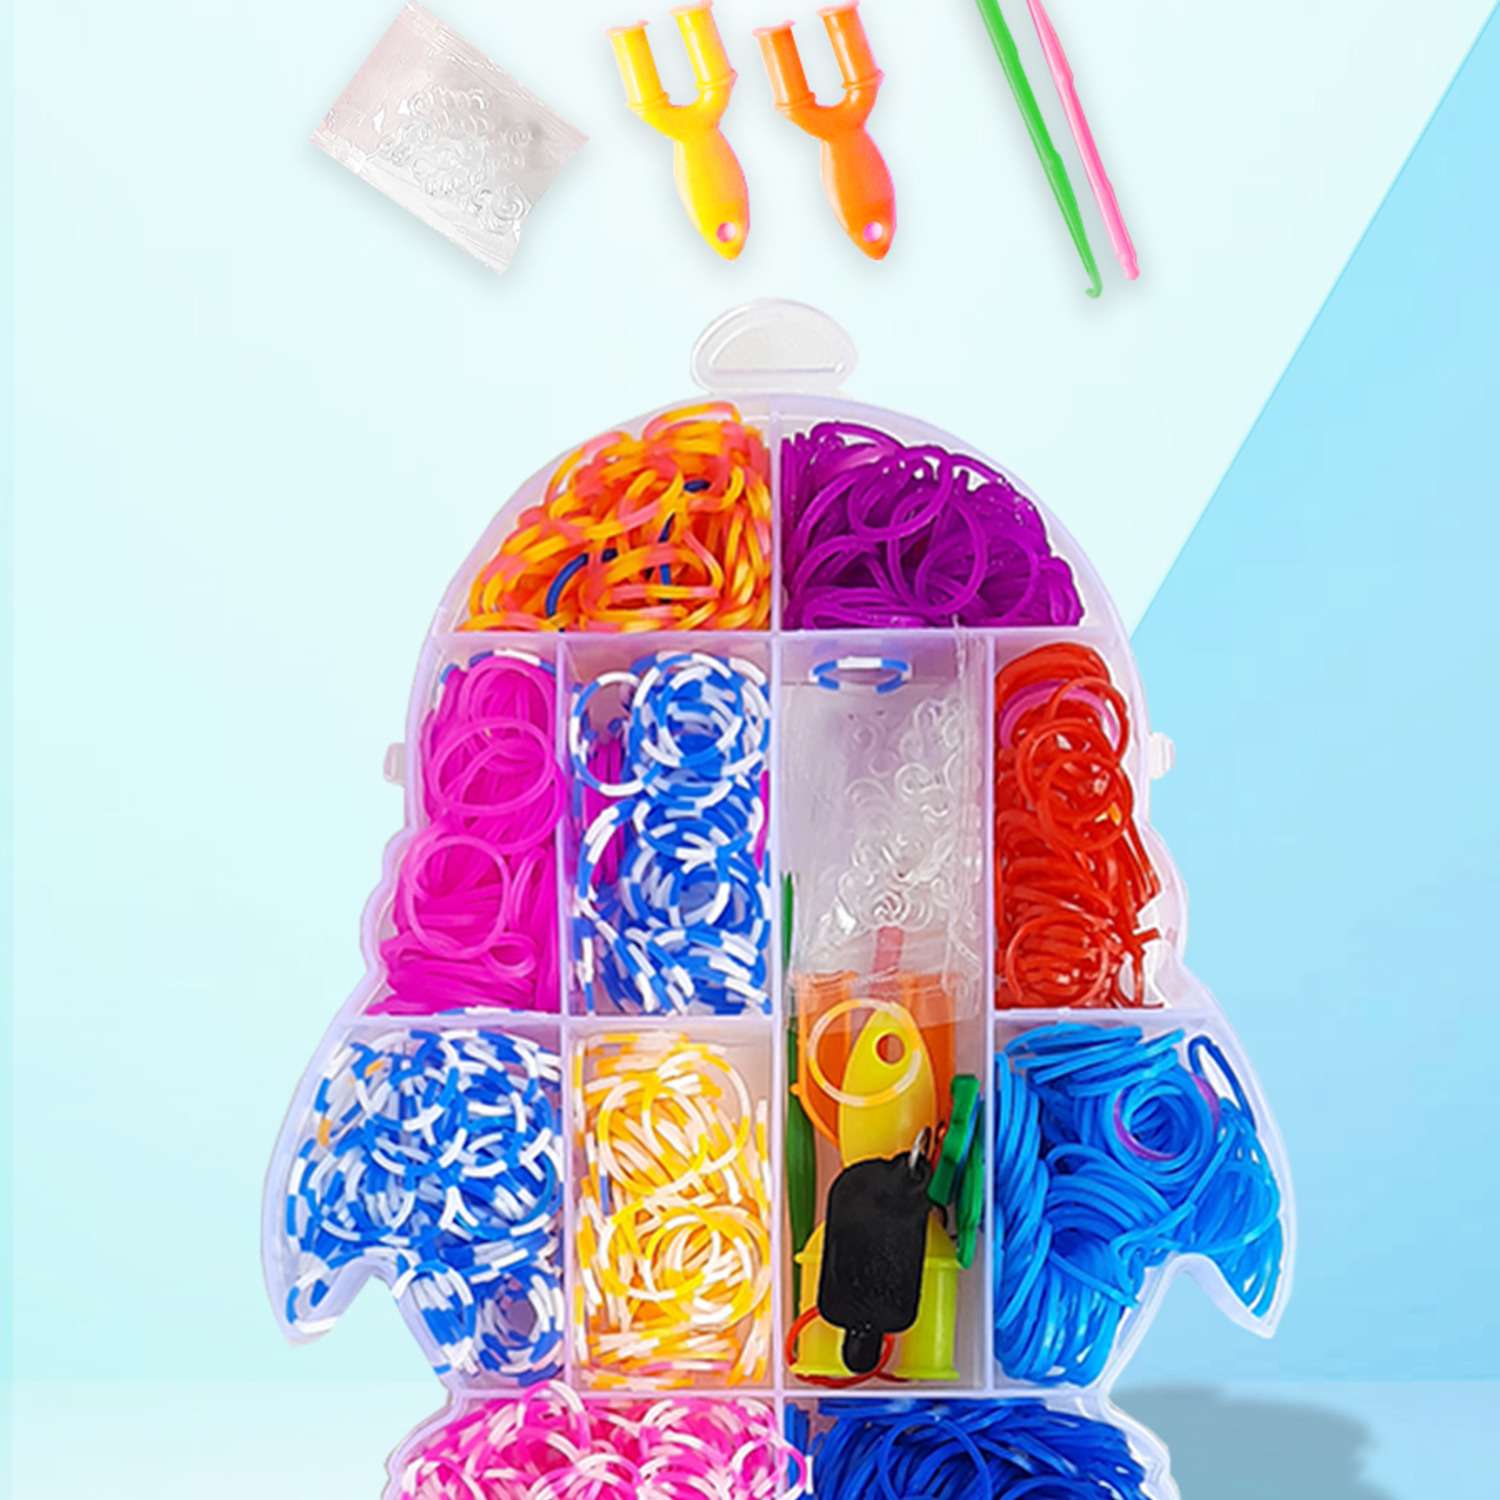 Набор резинок Color Kit для плетения браслетов Пингвинчик 600 шт 4 вида деталей - фото 5